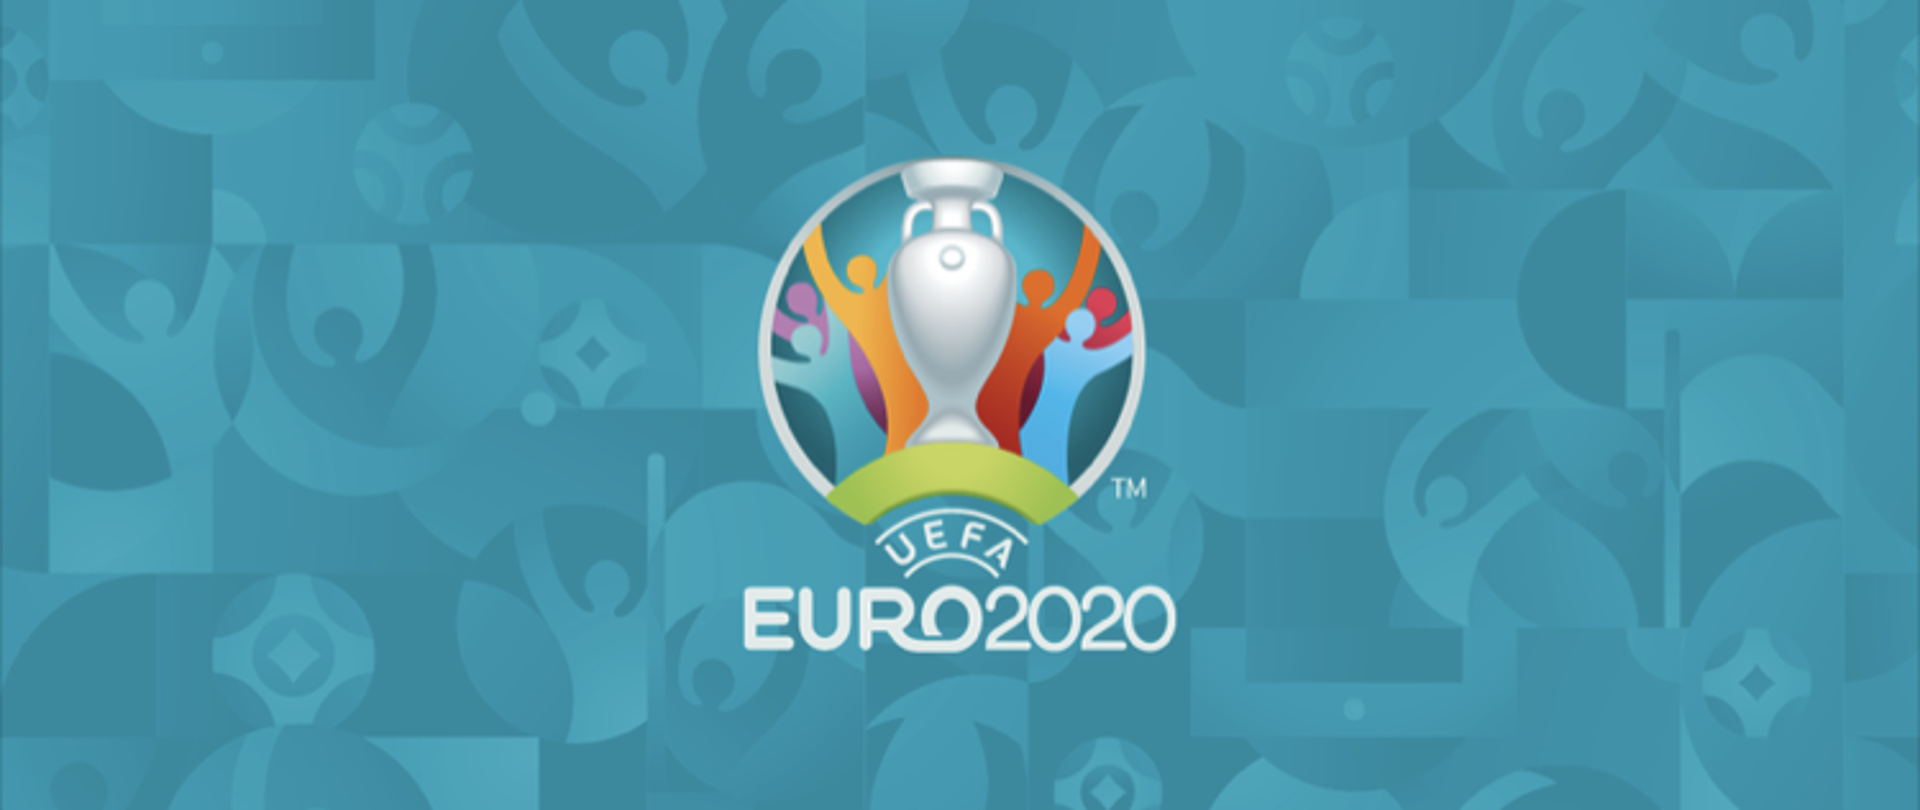 EURO 2020/2021